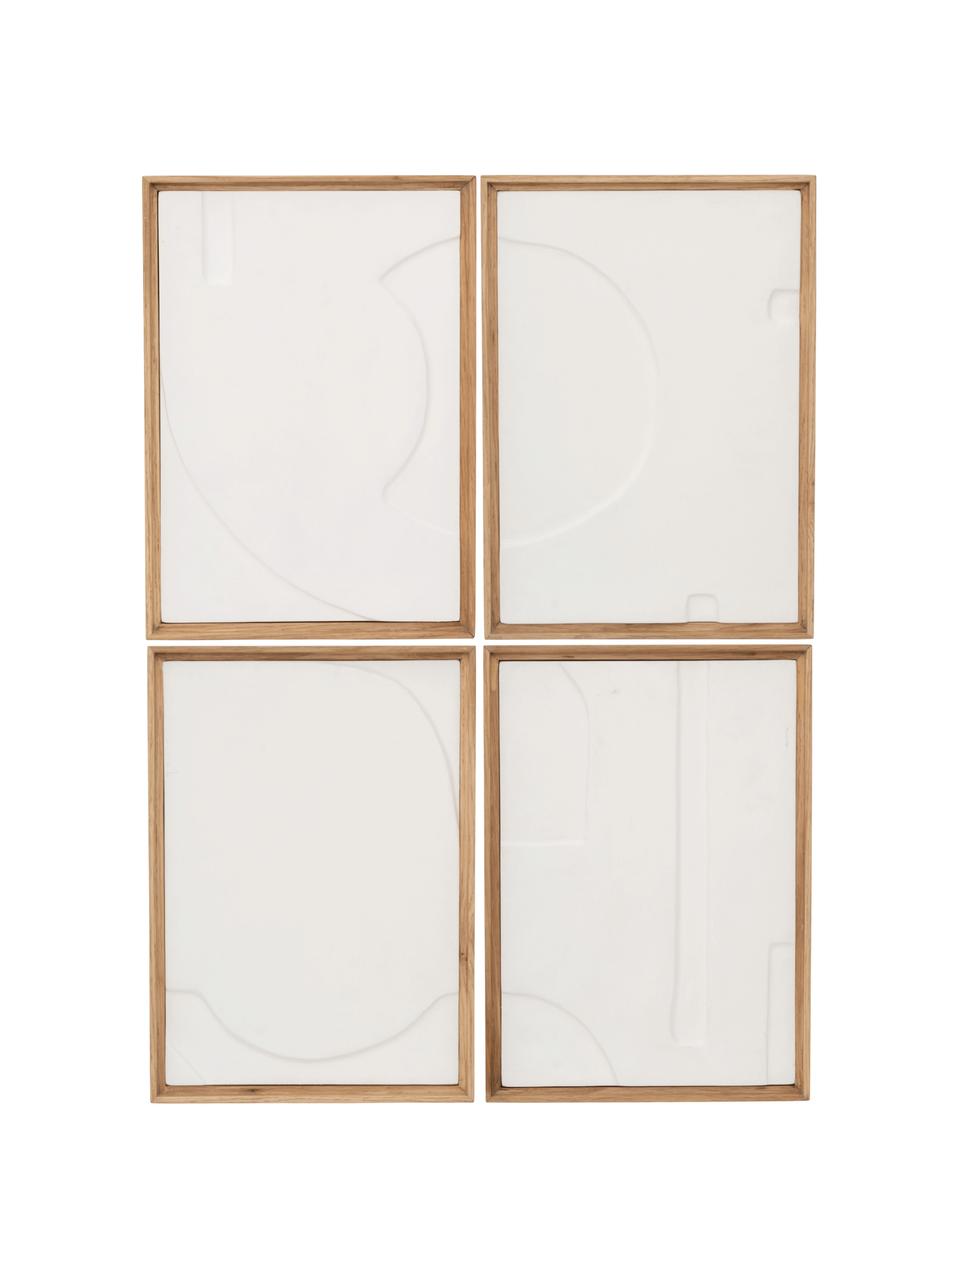 Decorazione da parete in cartapesta Graphic Geo, Struttura: legno di quercia, Legno chiaro, bianco crema, Larg. 21 x Alt. 29 cm